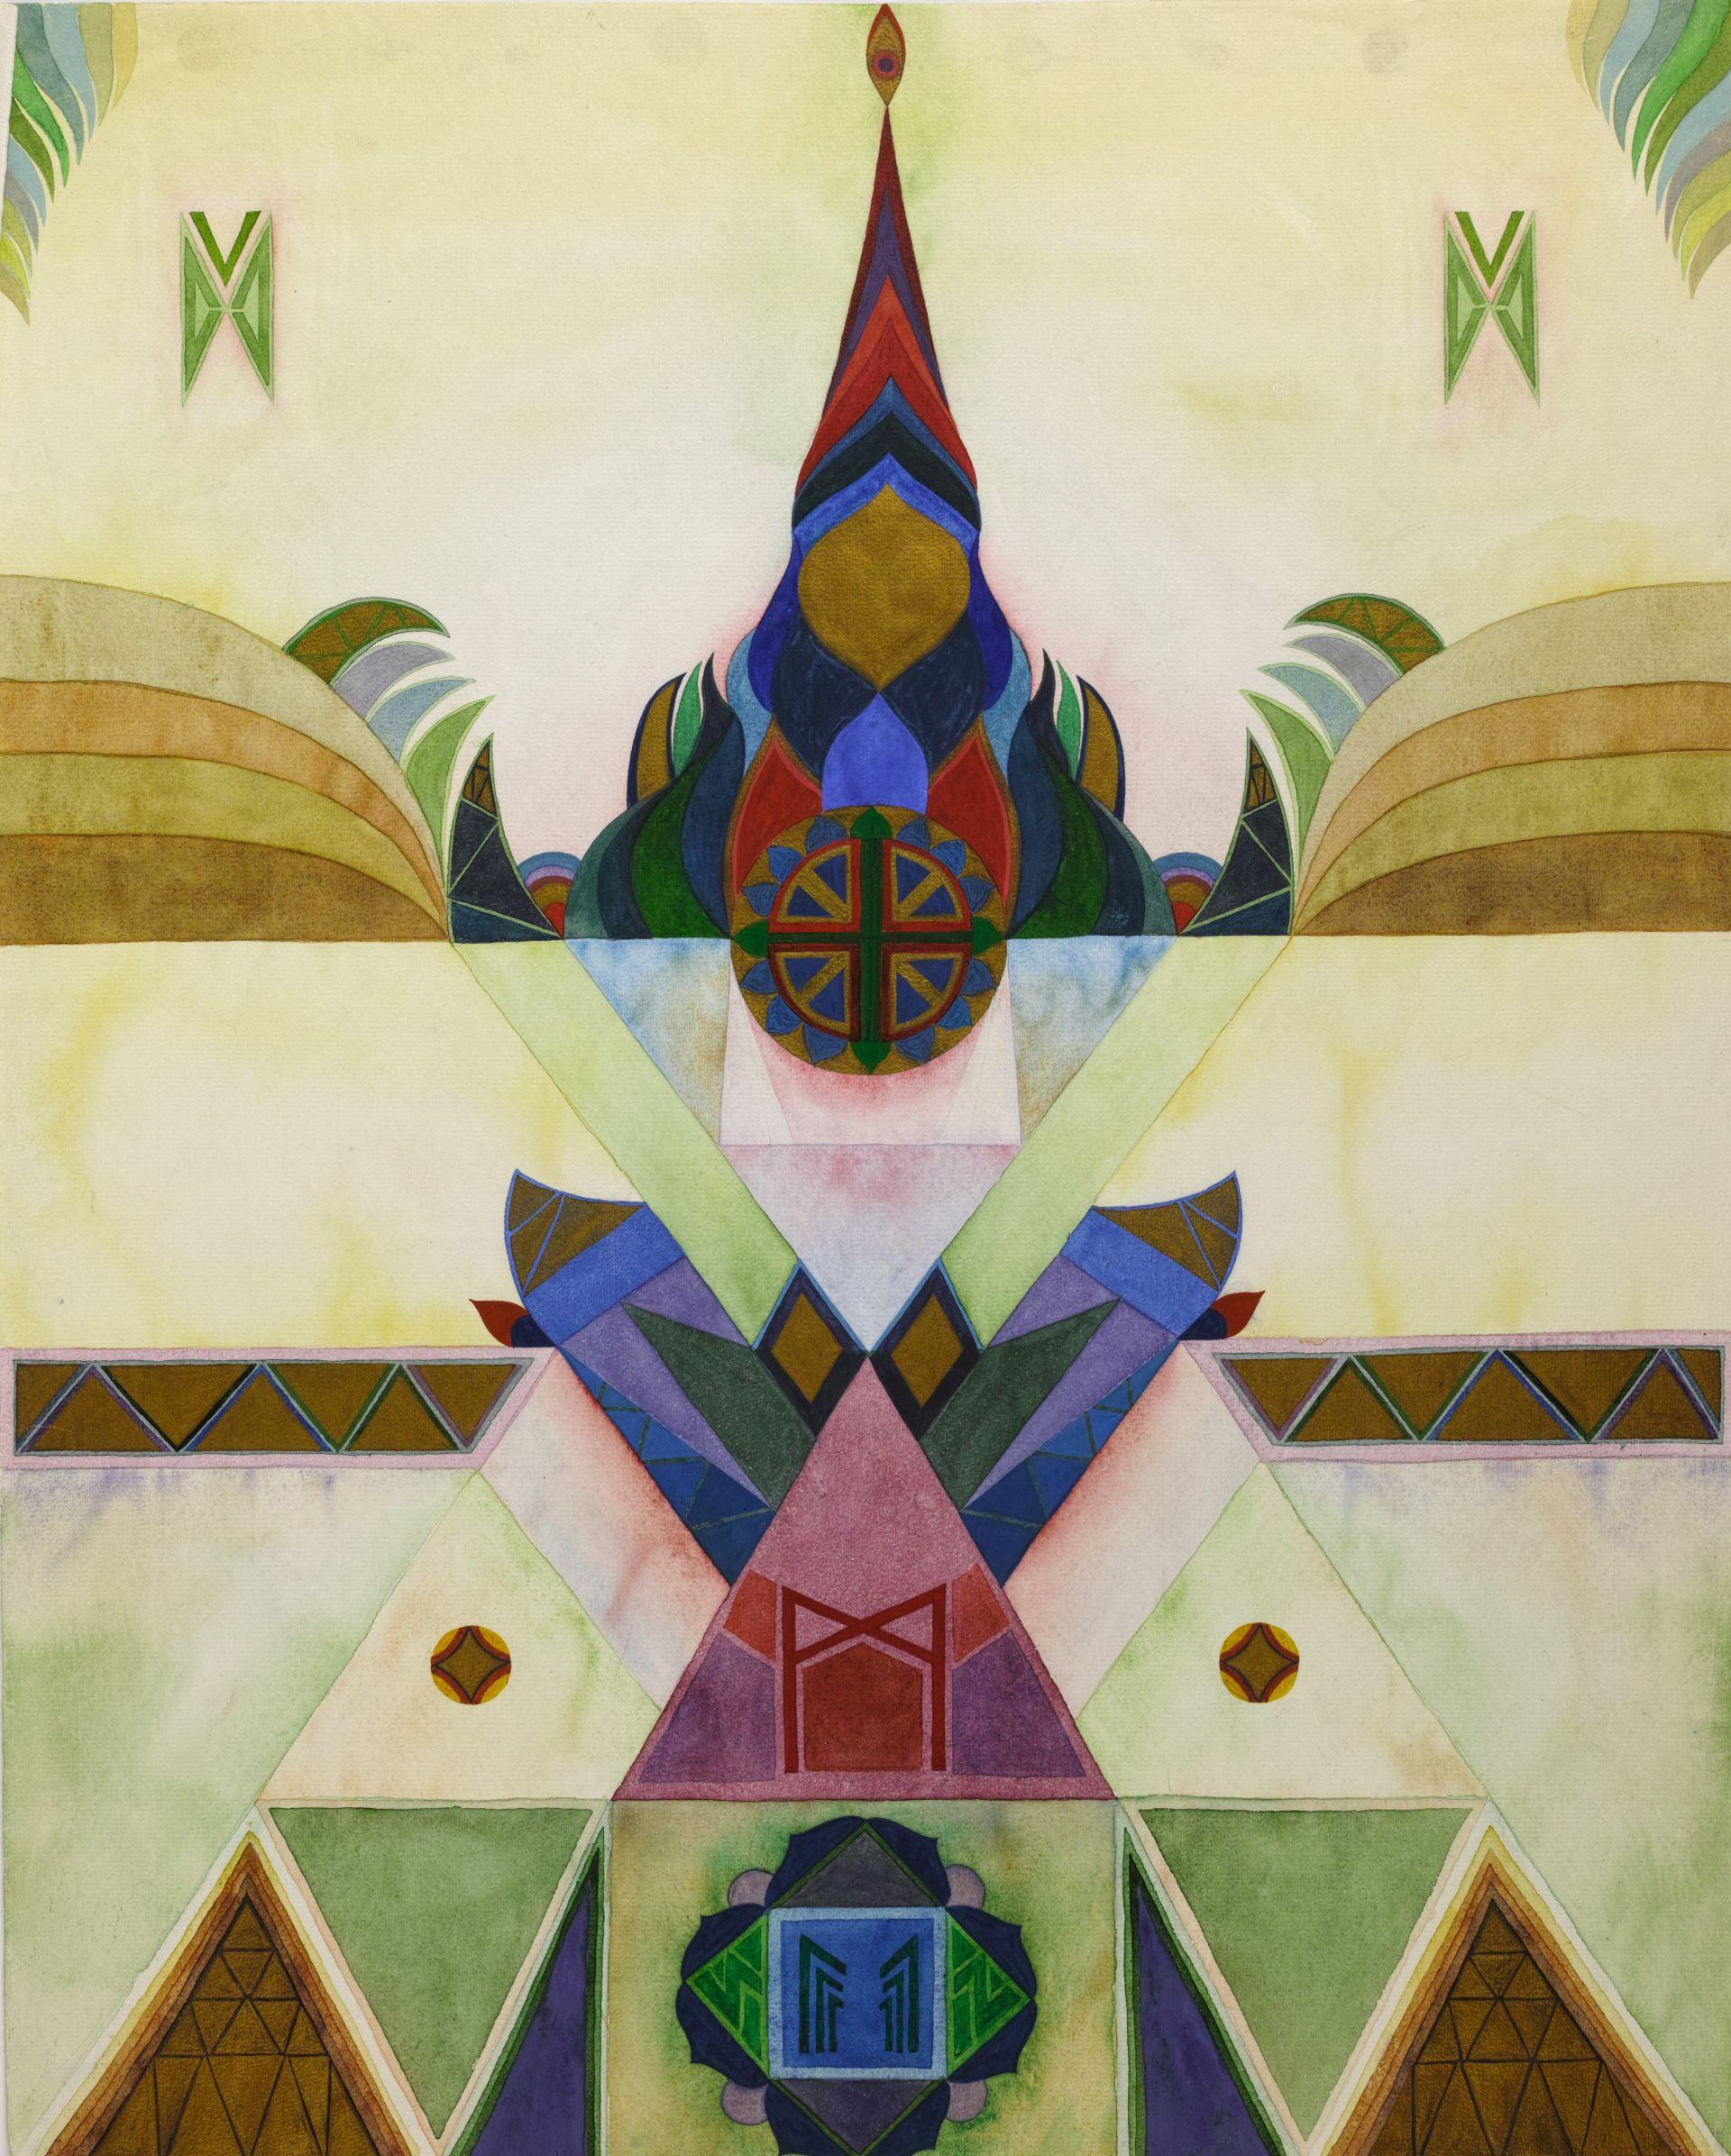 Abstrakcyjna grafika geometryczna z centralnym, symetrycznym wzorem z żywymi kształtami i kolorami, w tym trójkątami, kołami i rombami. Projekt wydaje się uporządkowany z powtarzającymi się wzorami.